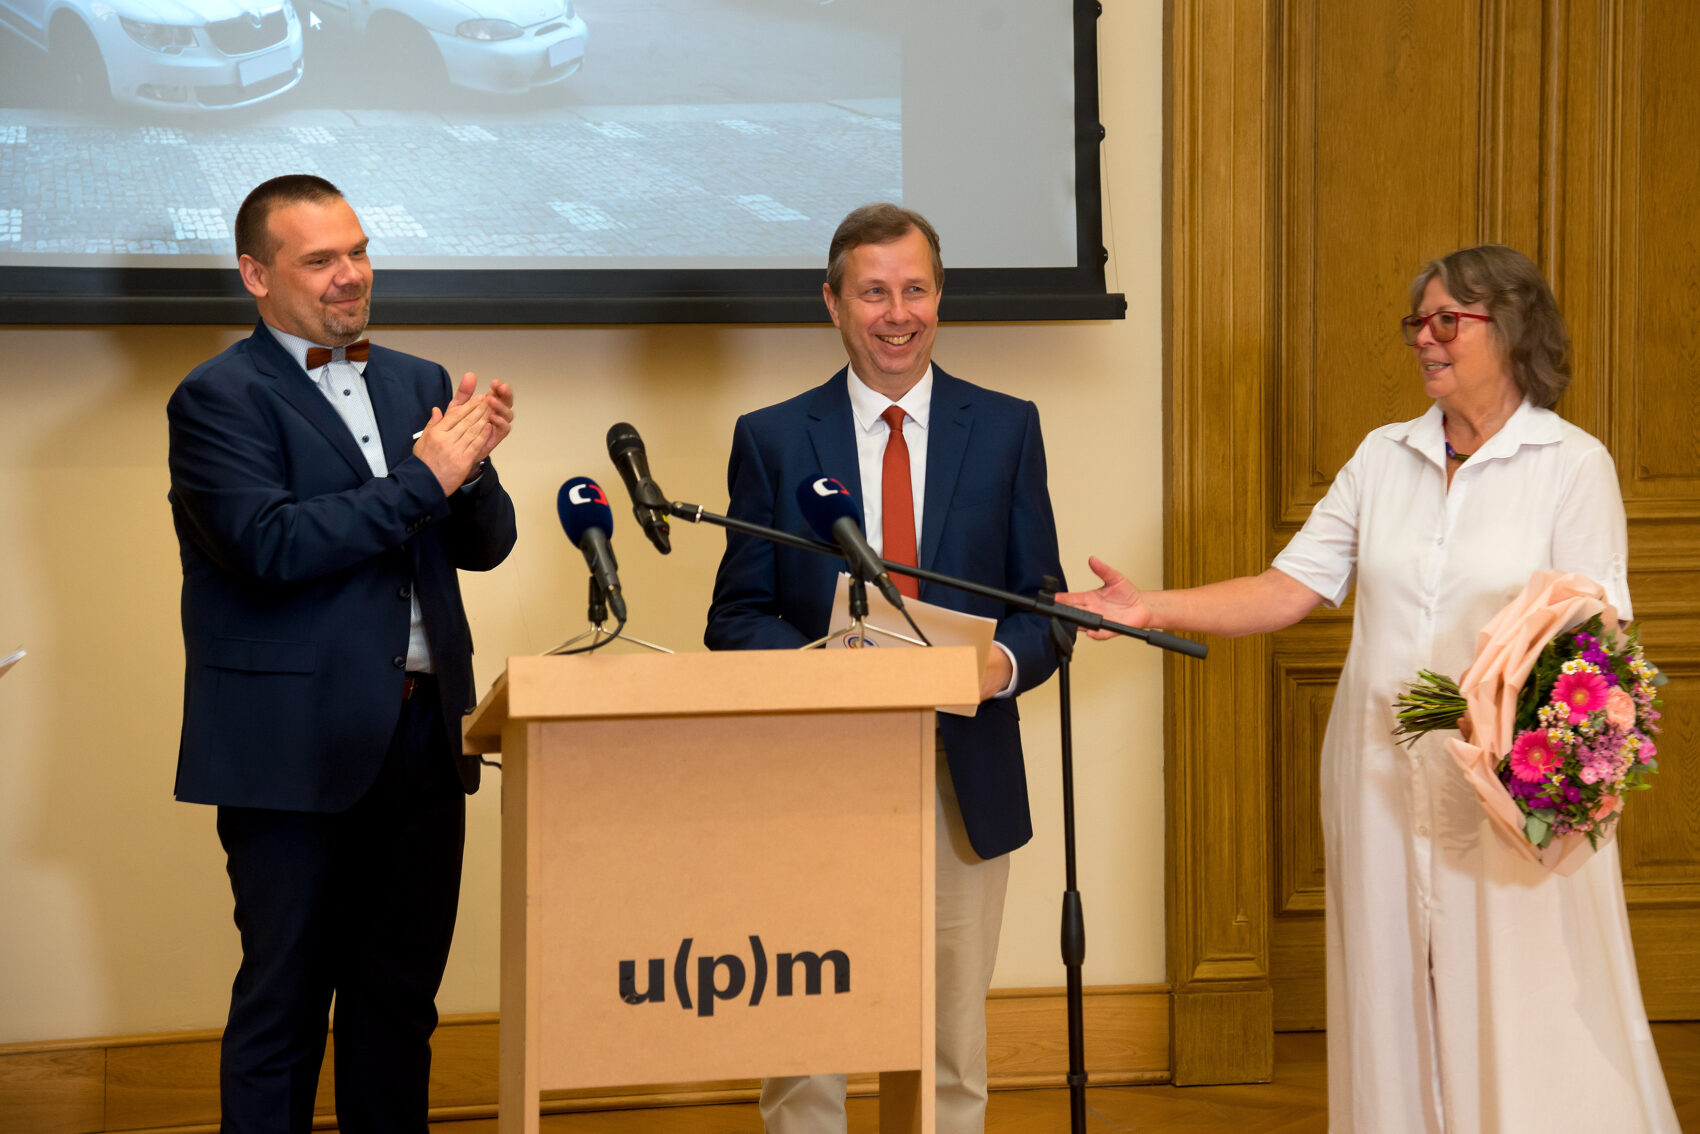 Ministr kultury Martin Baxa, odcházející ředitelka UPM Helena Koenigsmarková a nově jmenovaný ředitel Radim Vondráček stojí vedle sebe